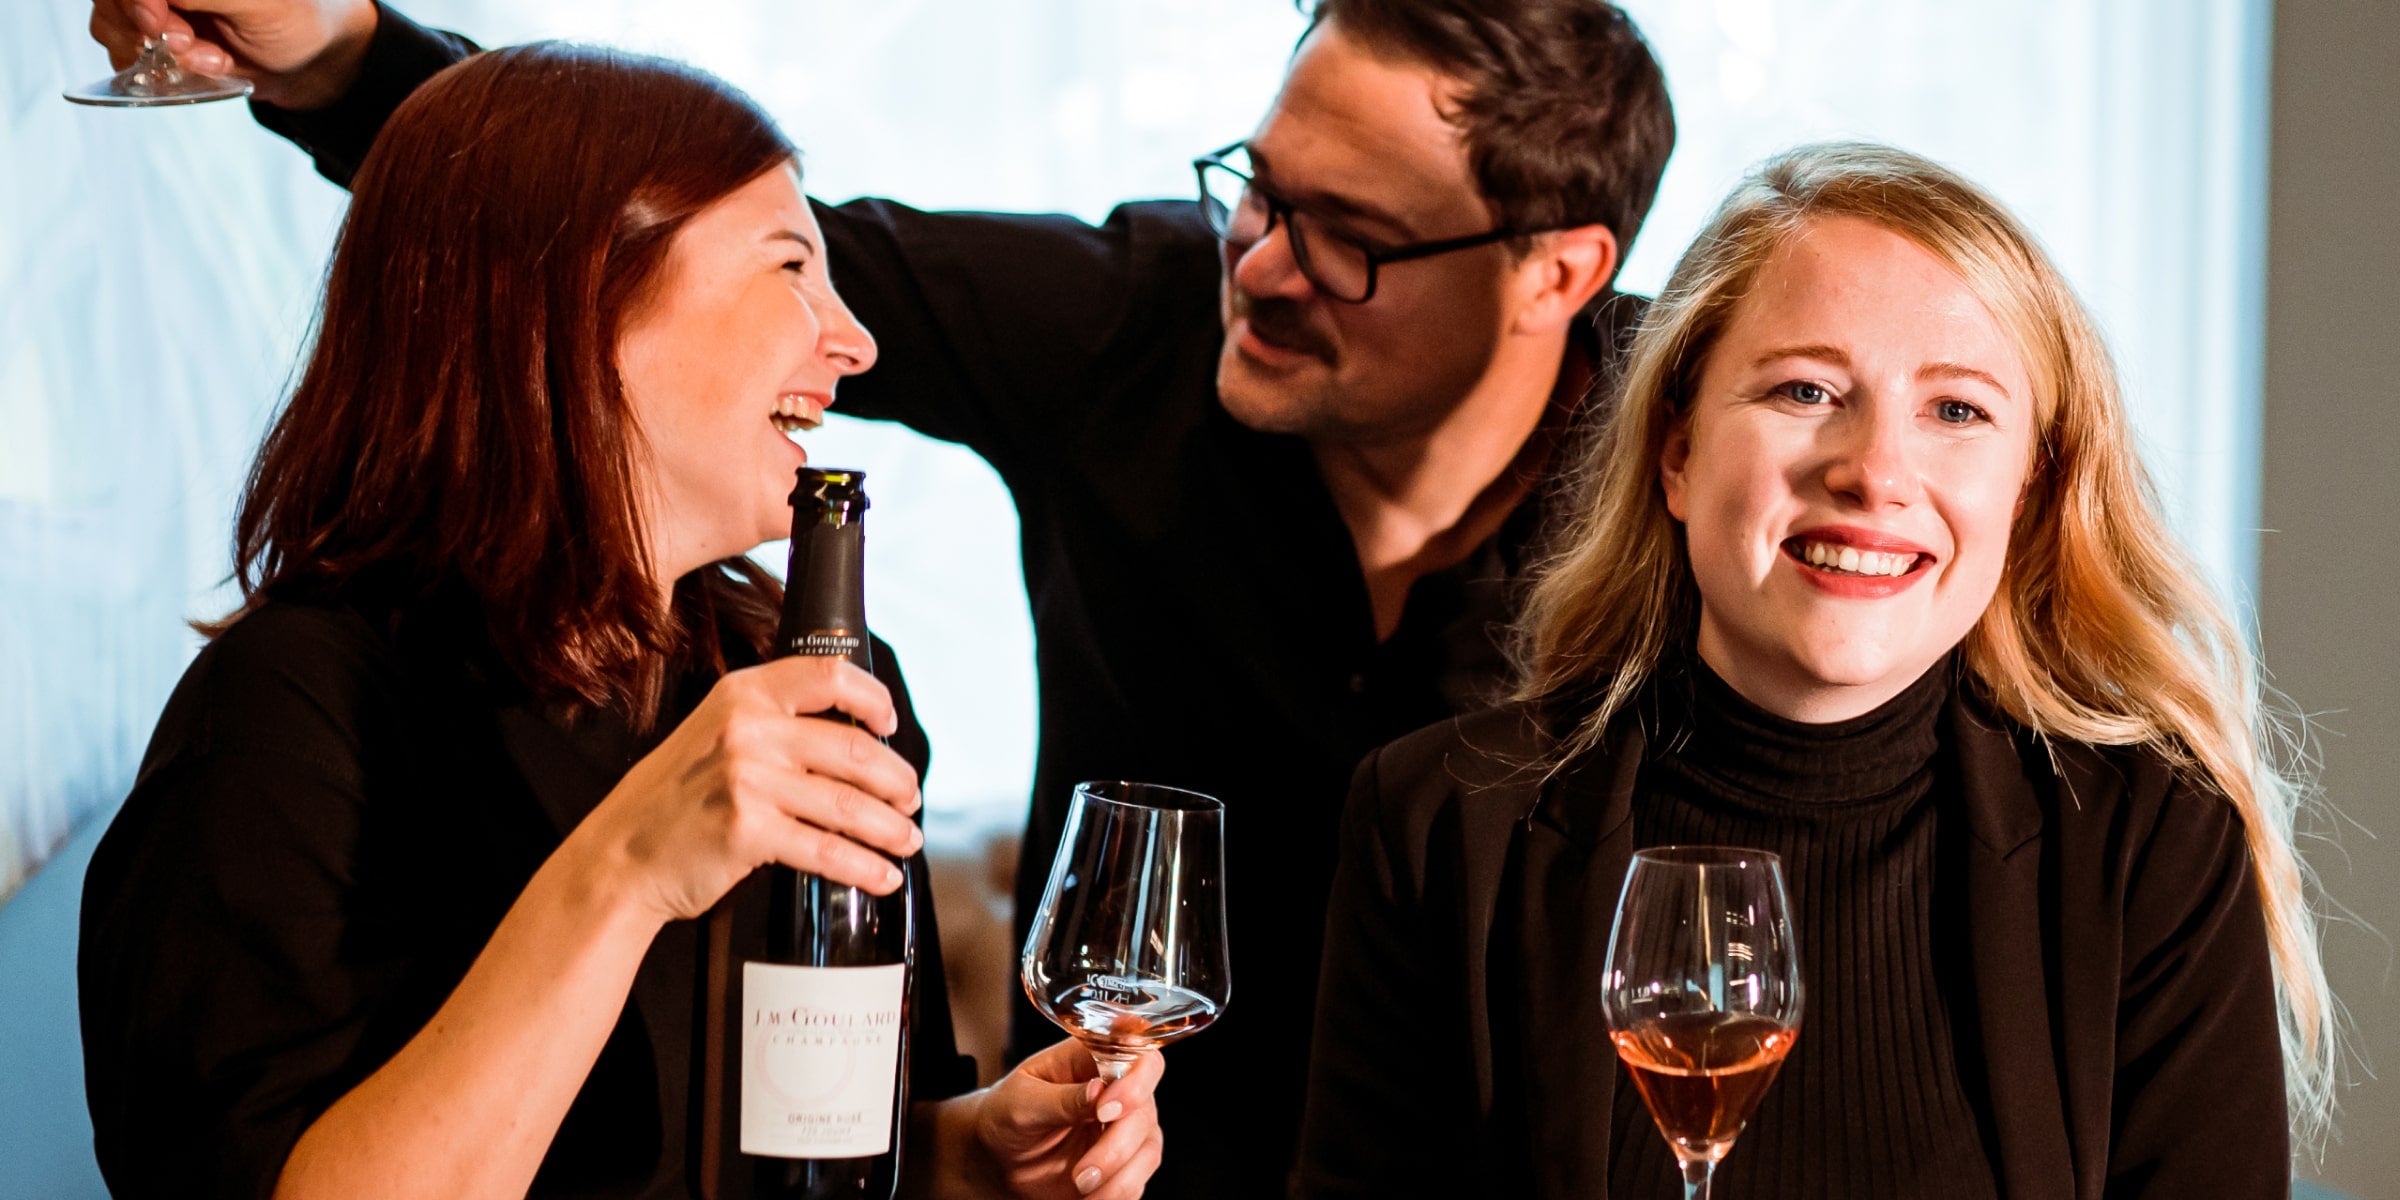 Zwei Frauen und ein Mann lachend bei einem Glas Wein